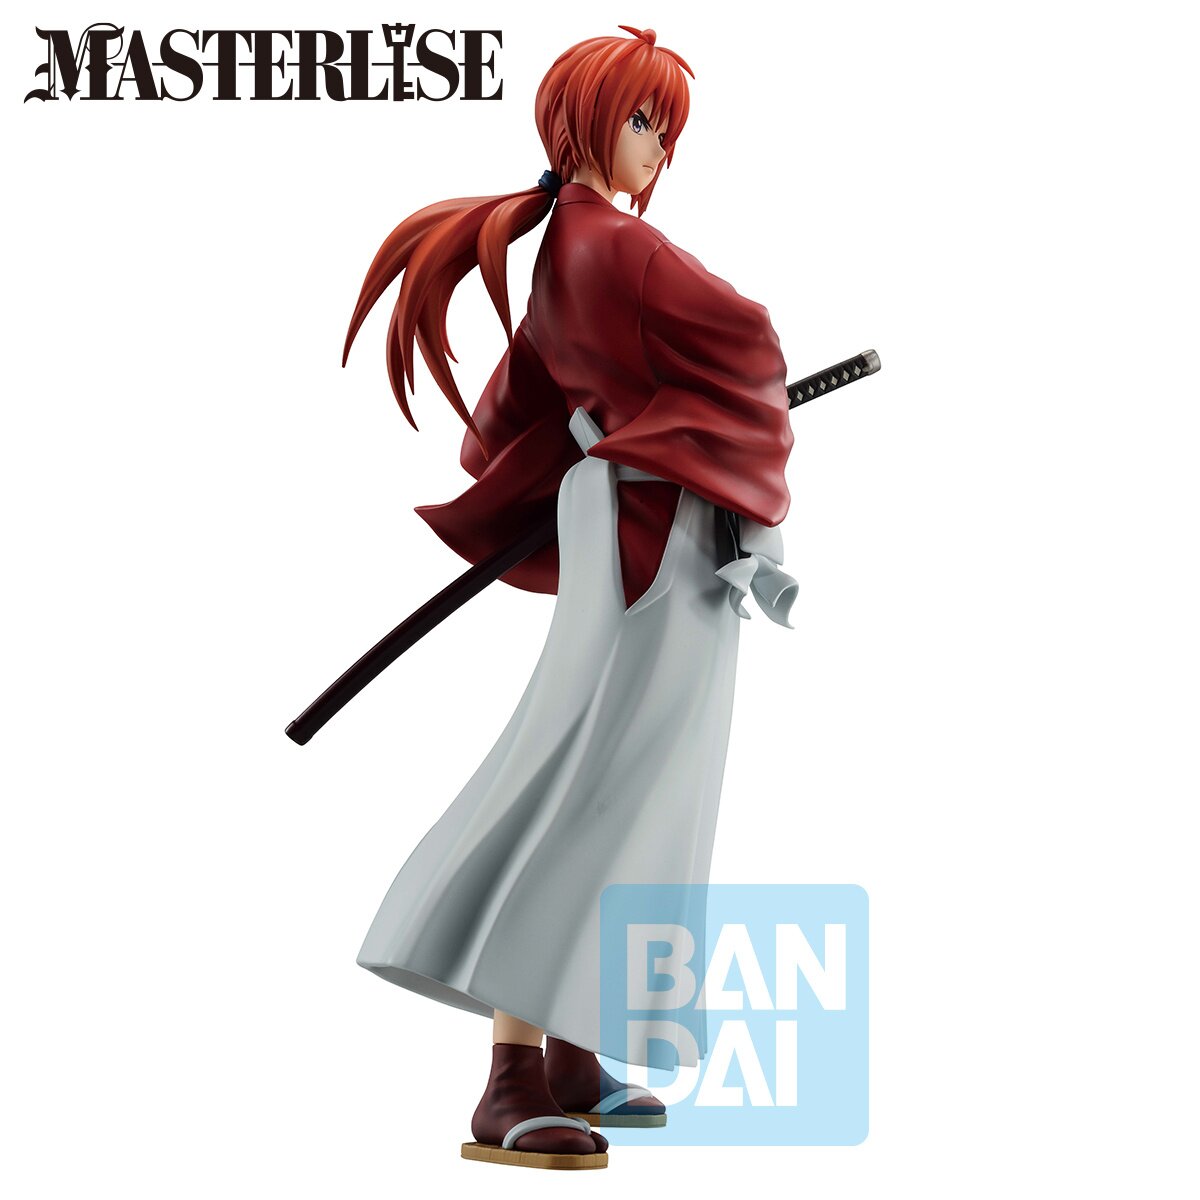 BUZZmod. Himura Kenshin Rurouni Kenshin Action Figure Limited Edition